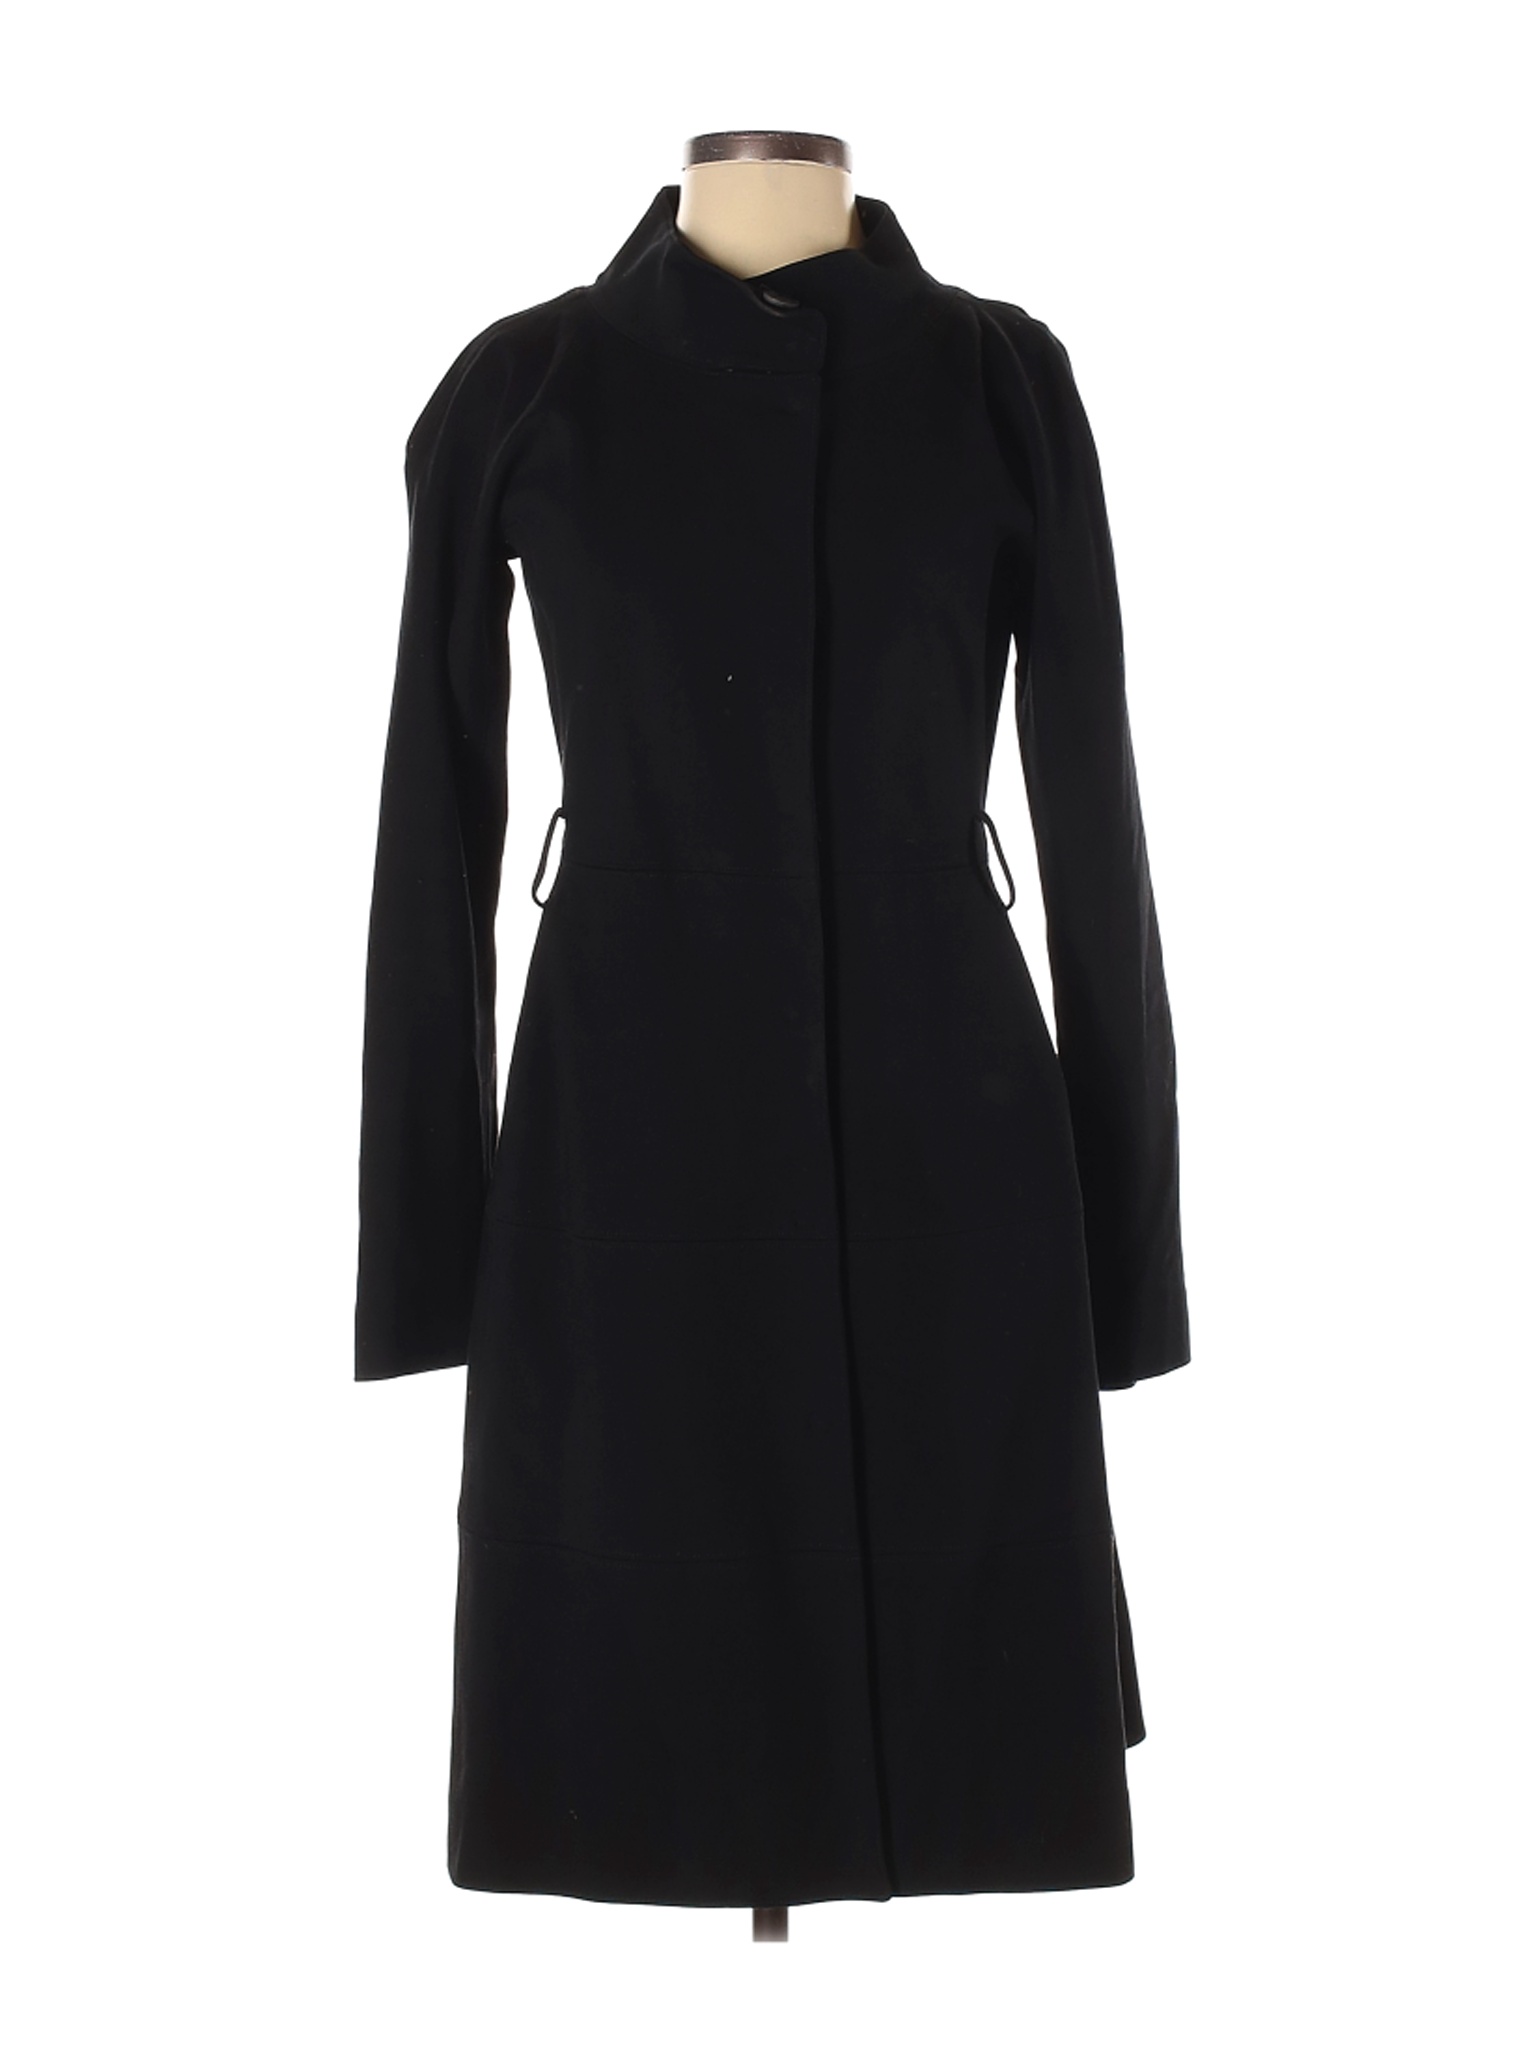 Theory Women Black Coat S | eBay